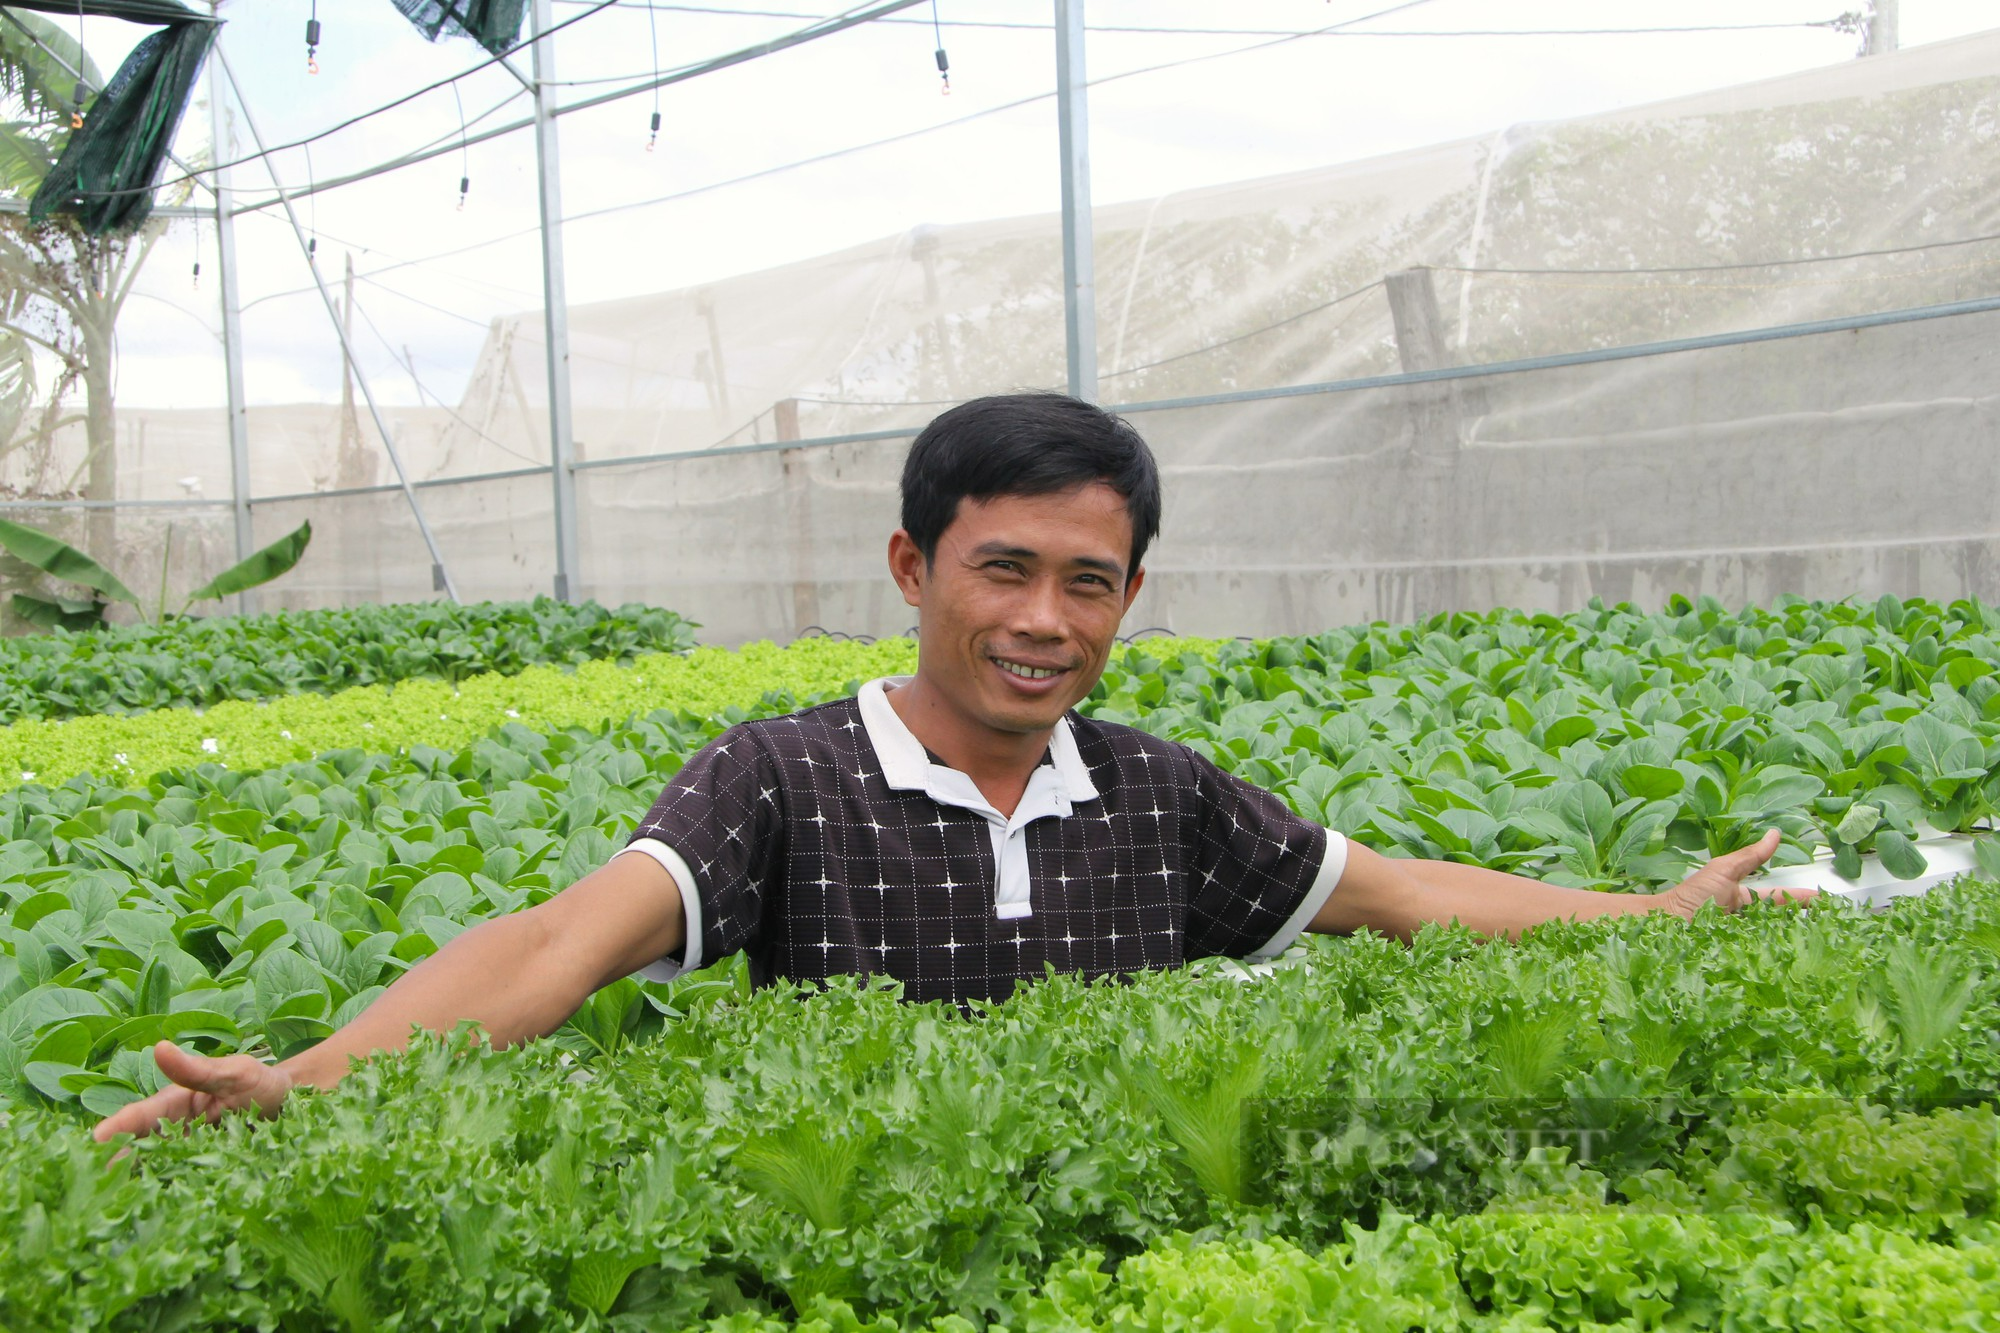 Anh nông dân kiếm chục triệu mỗi tháng từ 500 mét vuông trồng rau sạch ở Ninh Thuận - Ảnh 1.